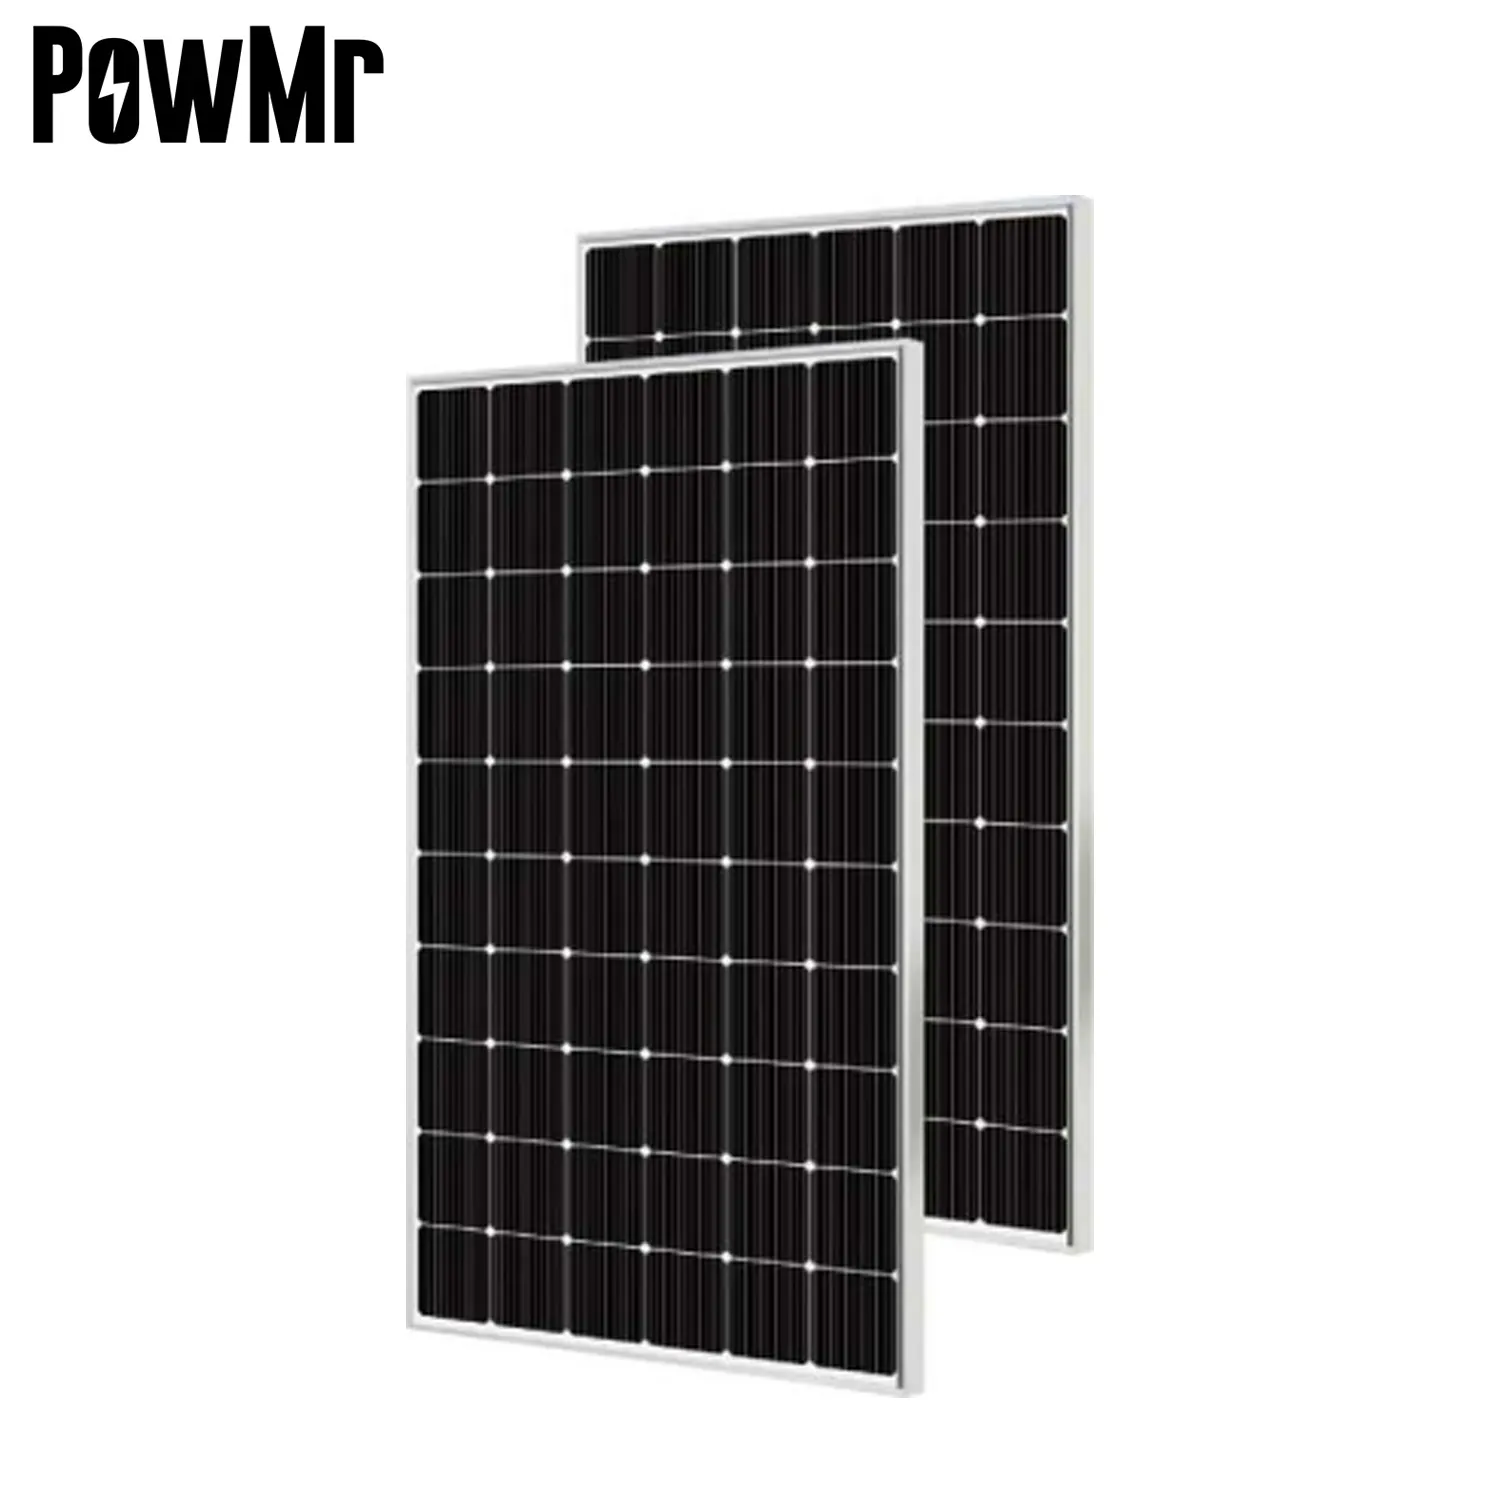 Powmr 450 Watt Half Cut Mono Solar Pv Panelen Hoge Efficiëntie 450 W Monokristallijn Zonnepaneel Voor Thuis